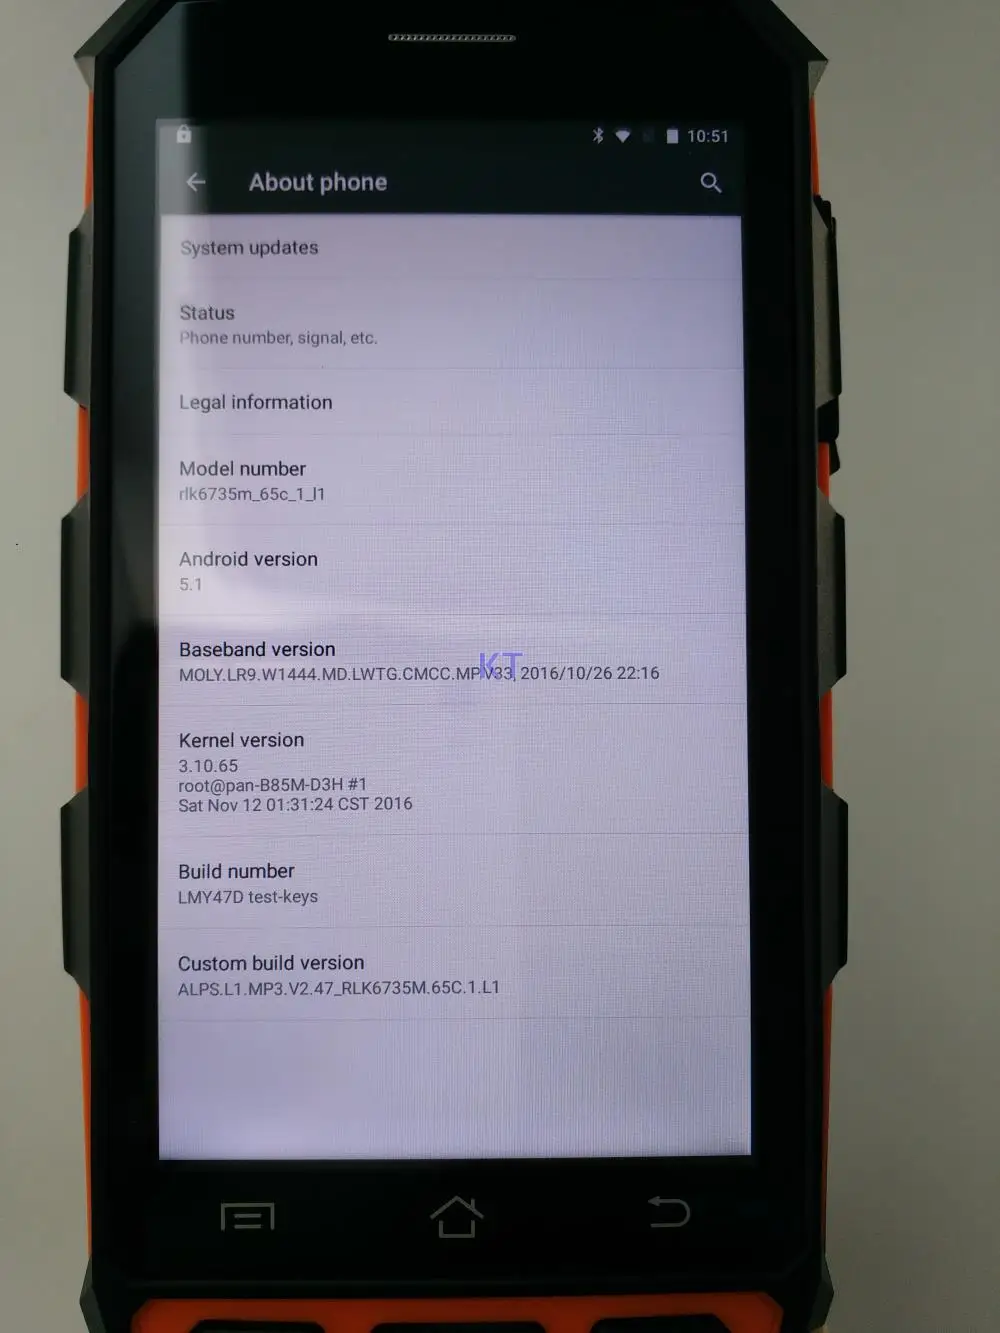 Kcosit C5 IP65 Прочный Android Водонепроницаемый телефон " считыватель PDA Ручной терминал 1D 2D лазерный сканер штрих-кода 8100 мА-ч